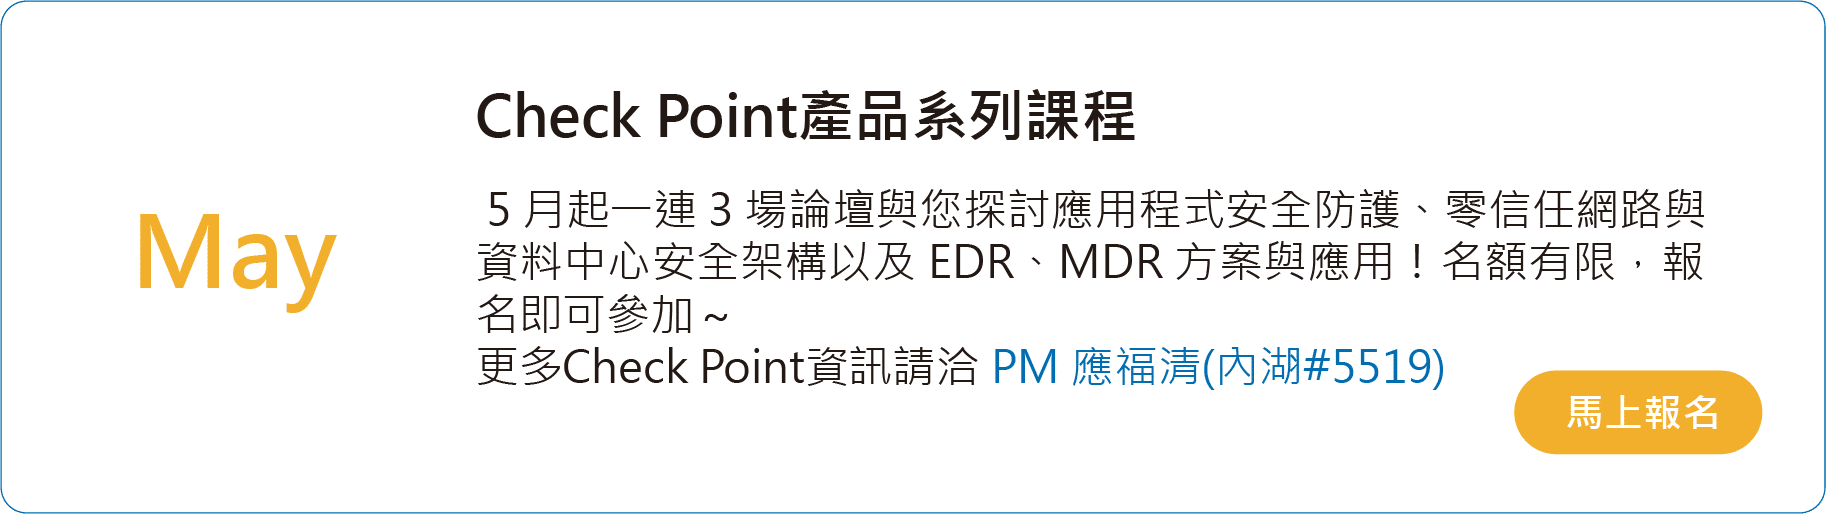 Check Point產品系列課程